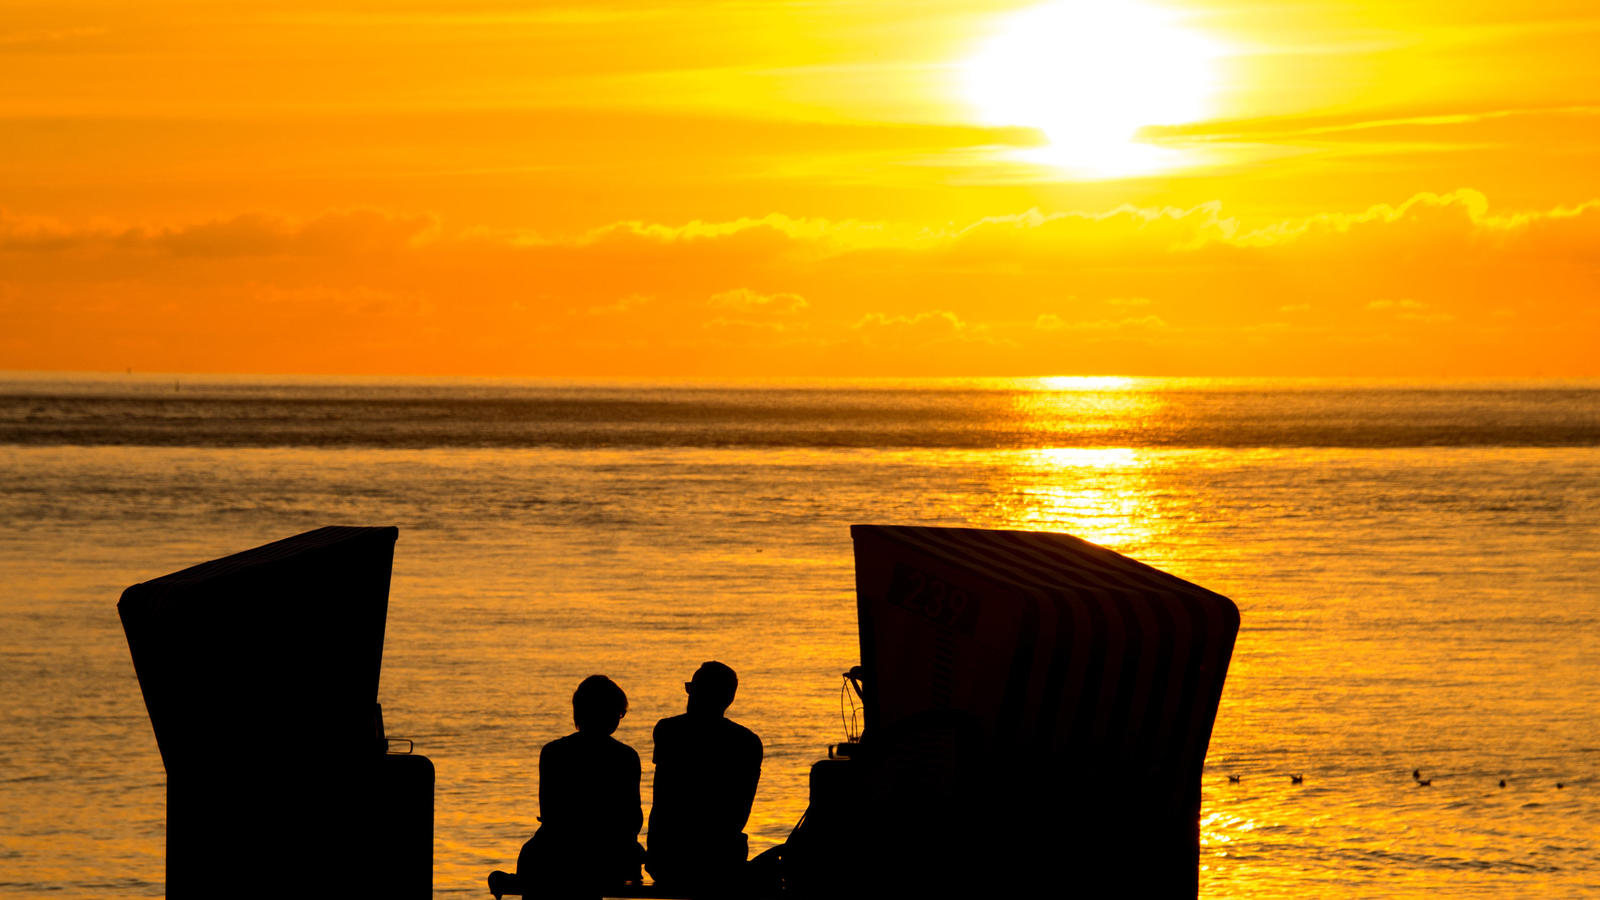 ARCHIV - ILLUSTRATION - Zwei Menschen sitzen am 26.07.2016 in Norderney (Niedersachsen) im Sonnenuntergang zwischen zwei Strandkörben. «Hygge» steht im Dänischen für die kleinen Freuden im Alltag, die die Lebensqualität erhöhen. (zu dpa «Der Hype um 